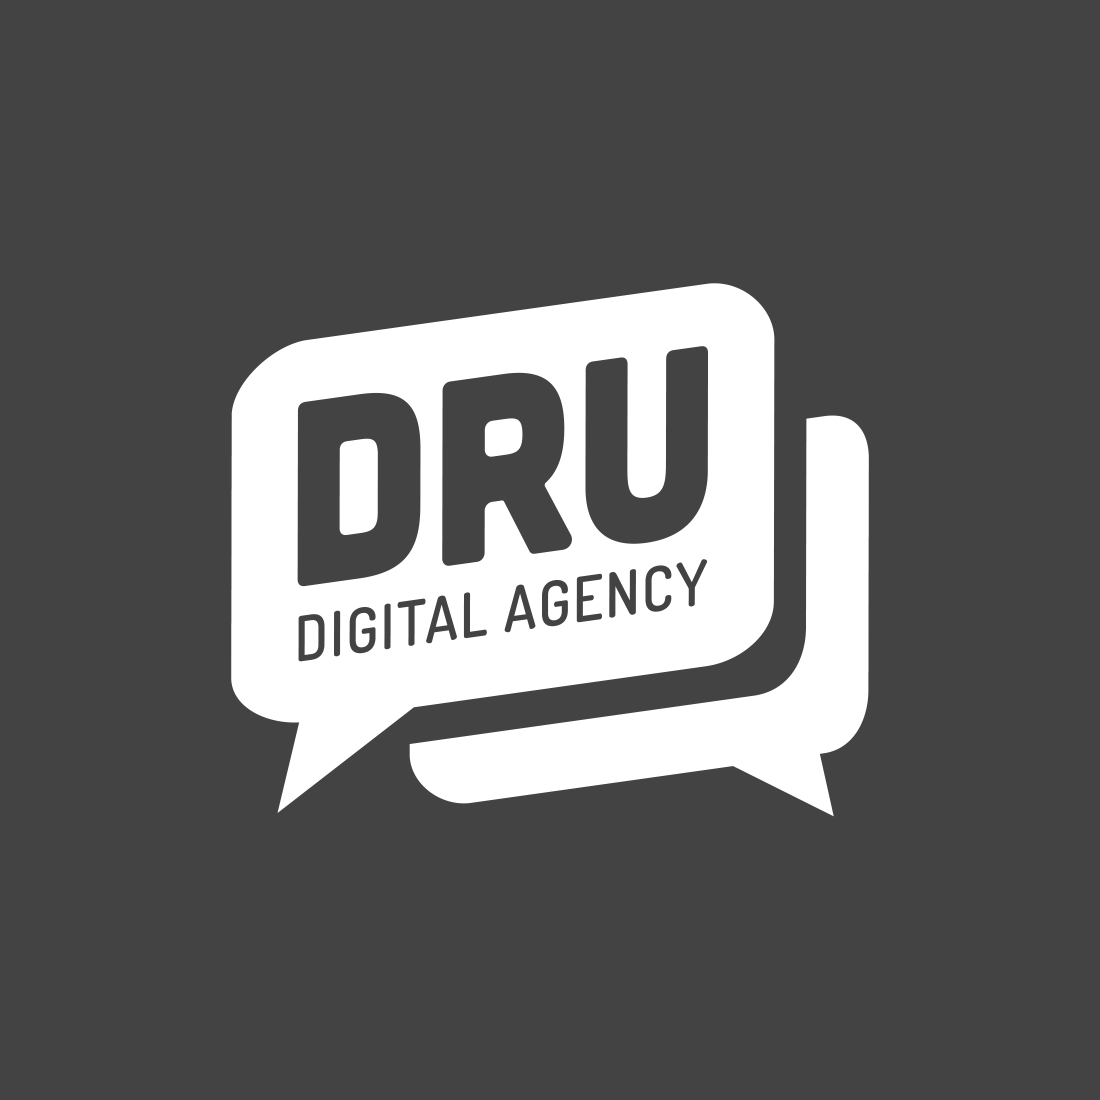 DRU Digital Agency